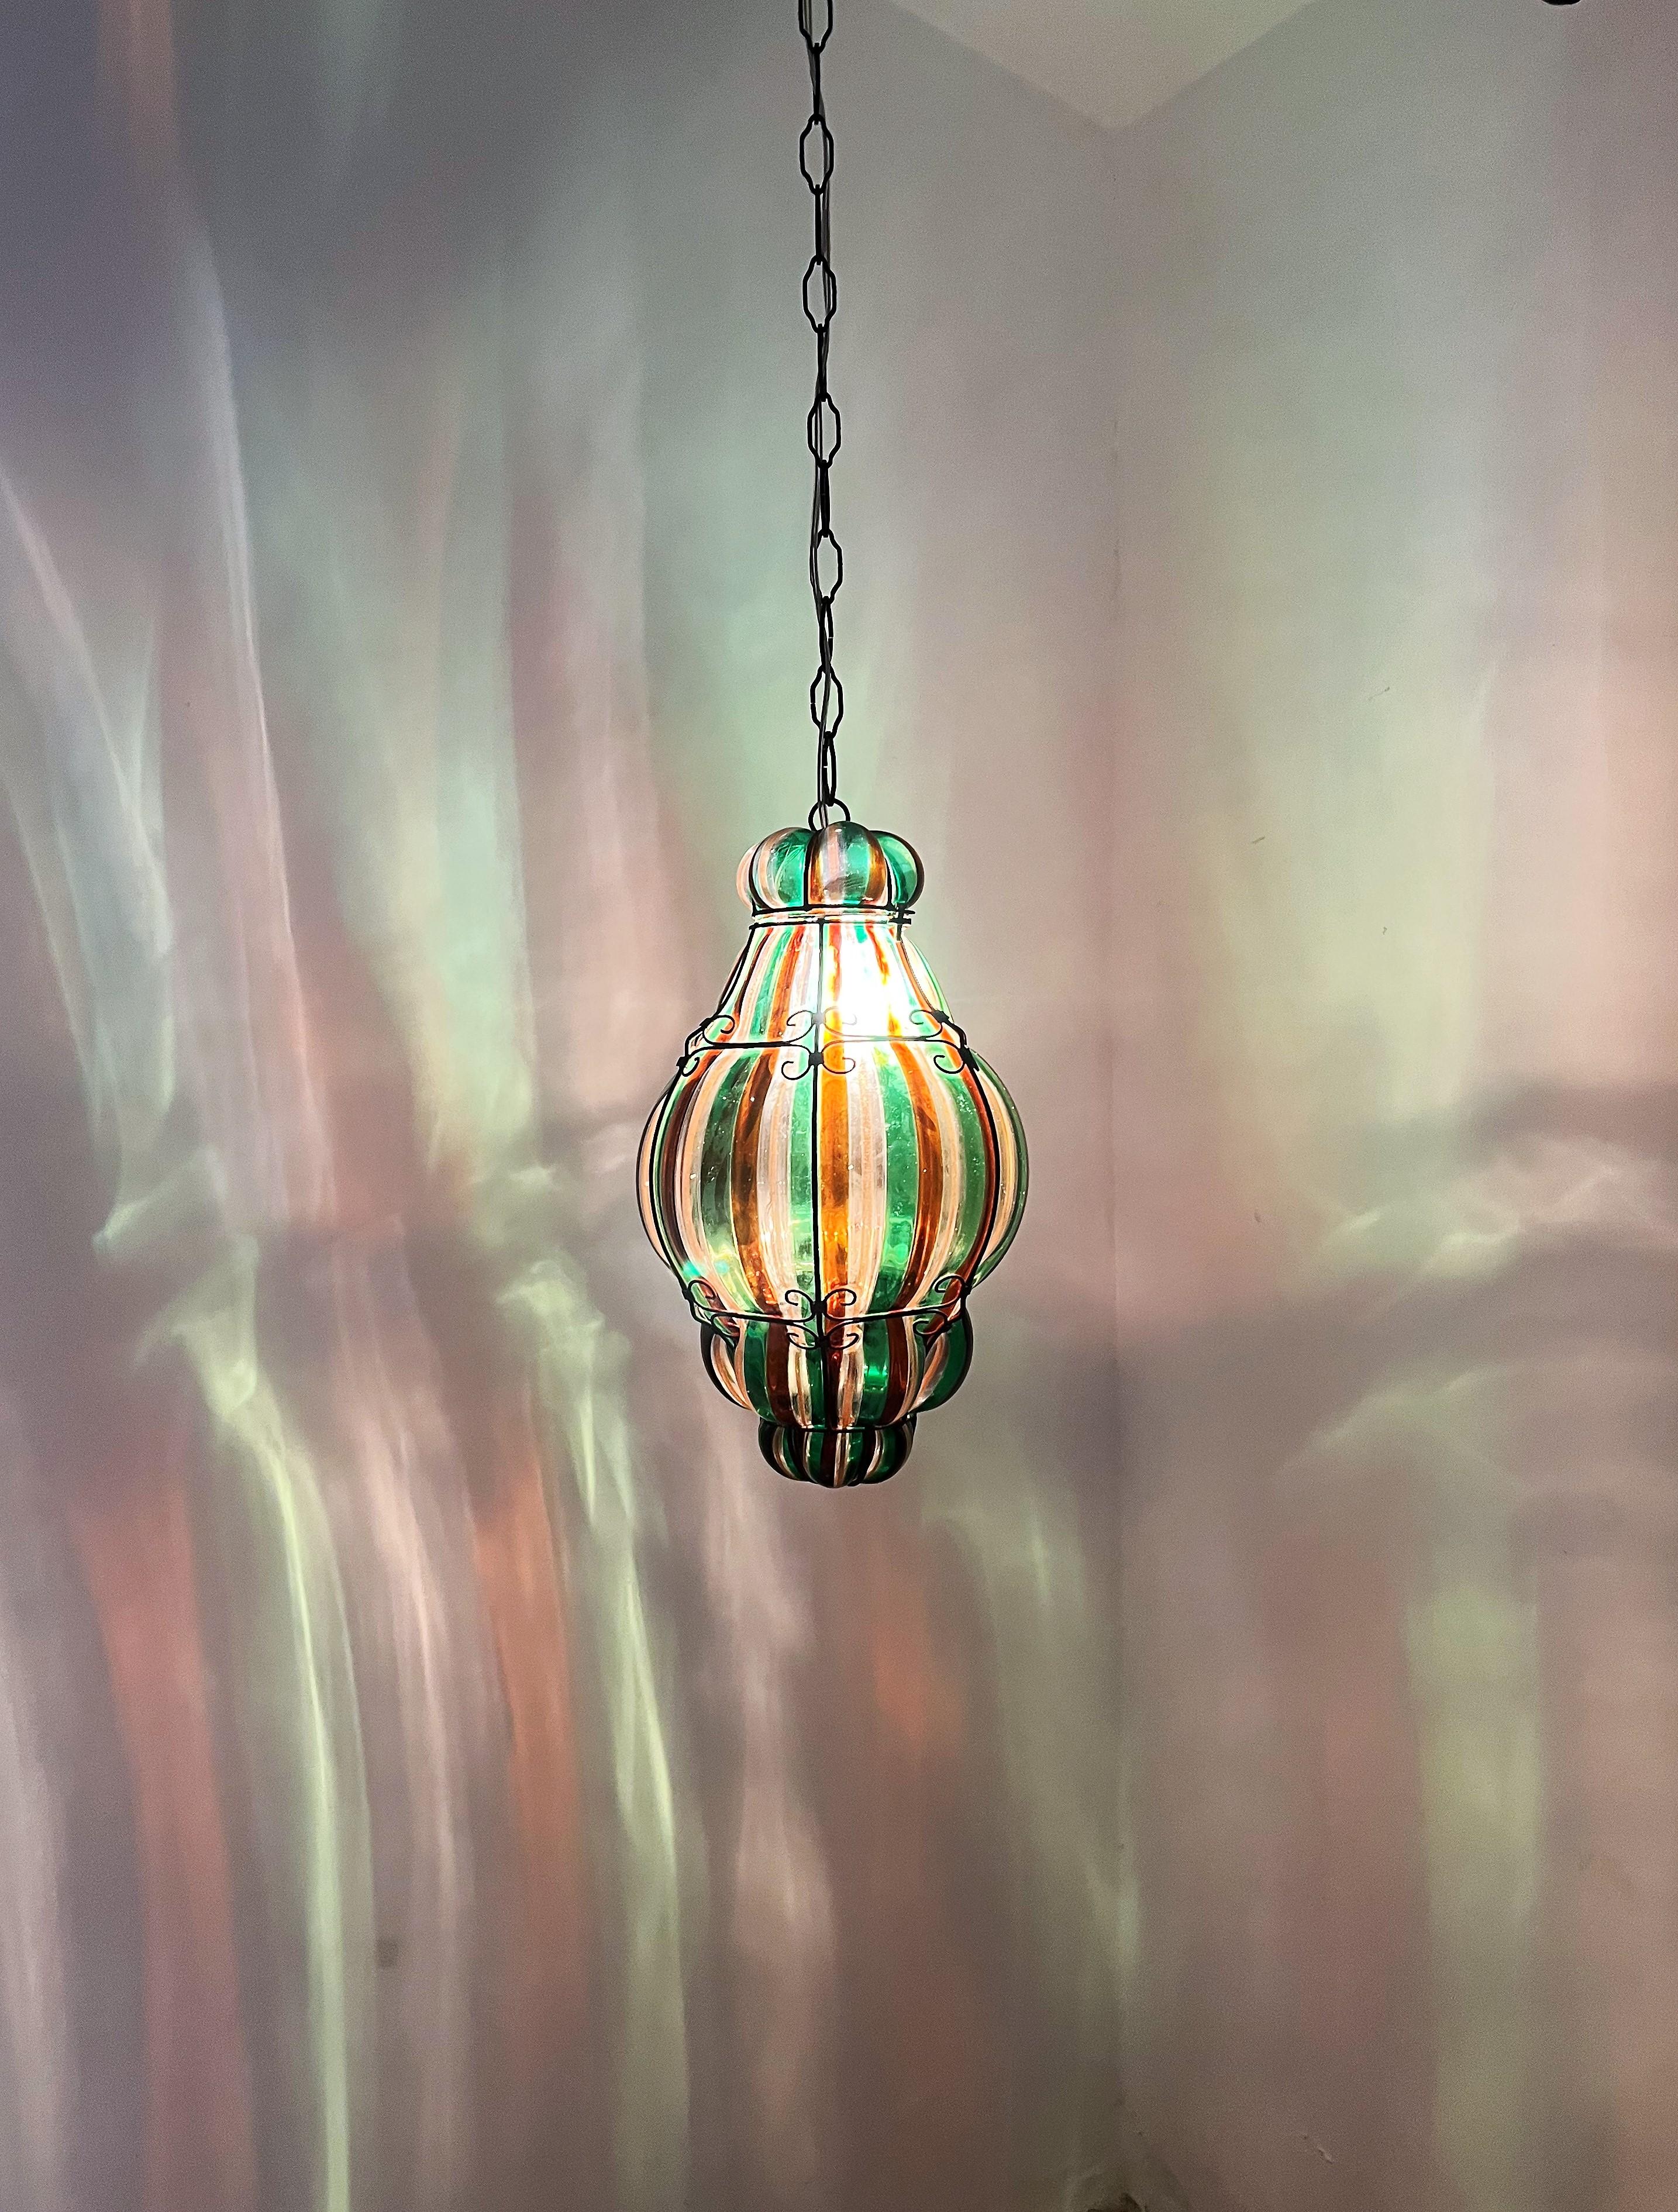 Italian 1940s Venini Lantern in Murano Glass by Fulvio Bianconi For Sale